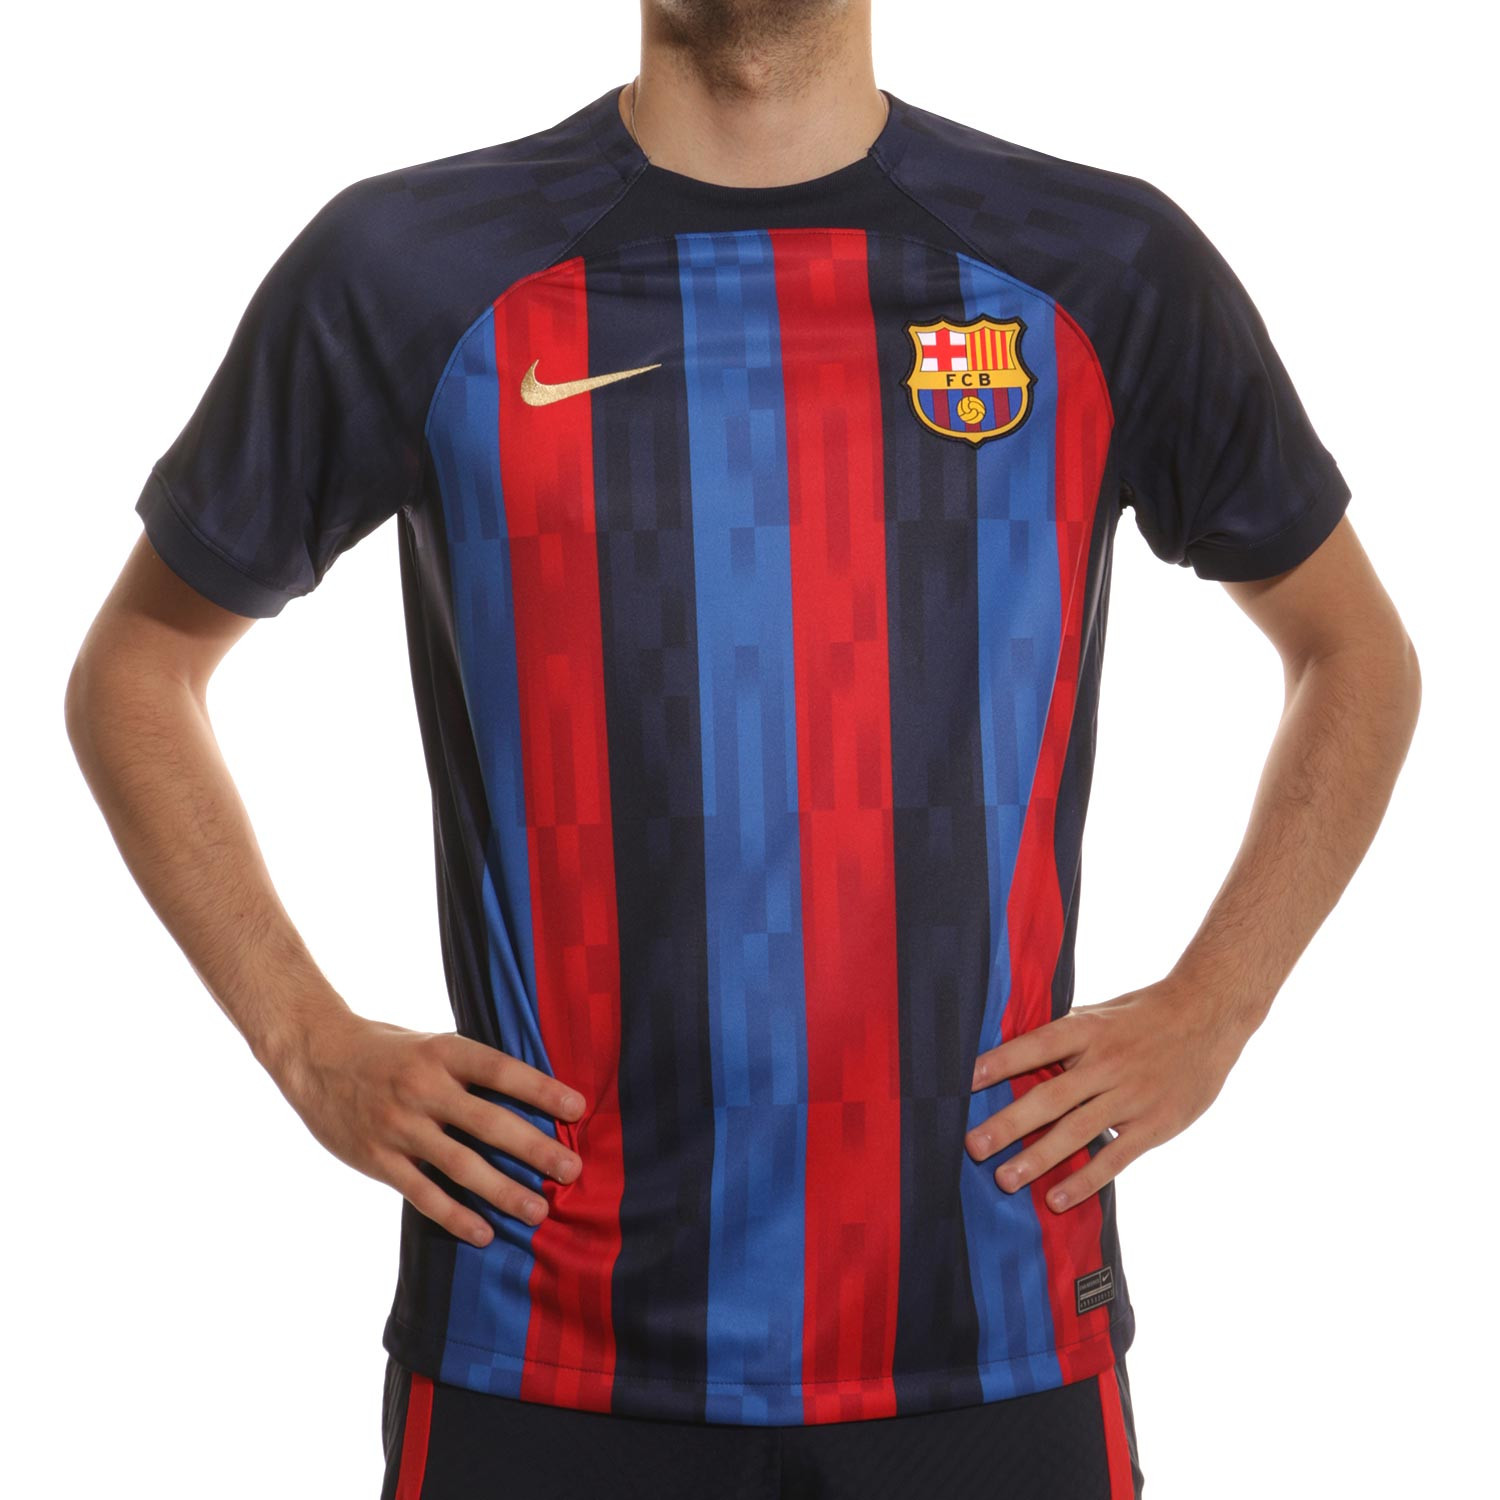 Camiseta FC Barcelona Dri-Fit Stadium sin publi |futbolmania